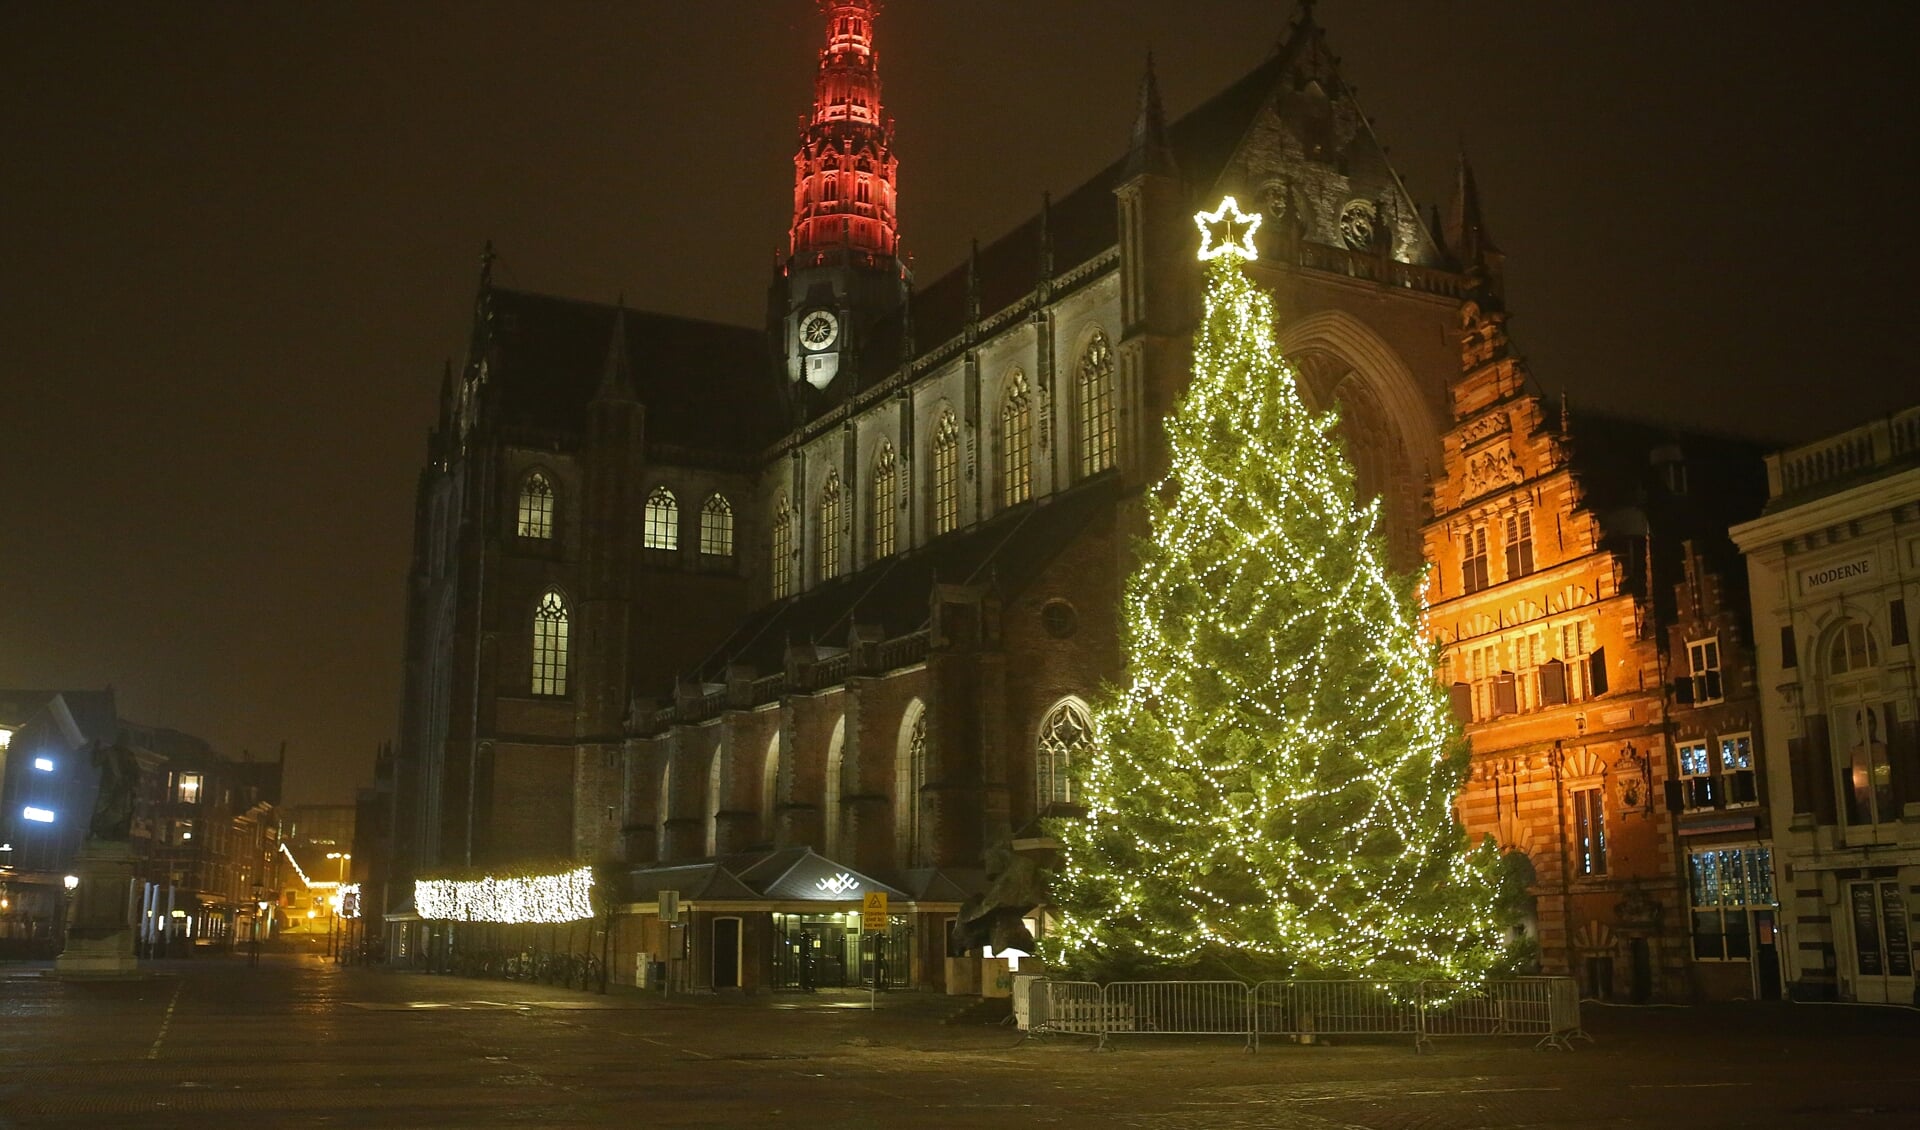 De kerstboom staat weer in vol ornaat op de Grote Markt!